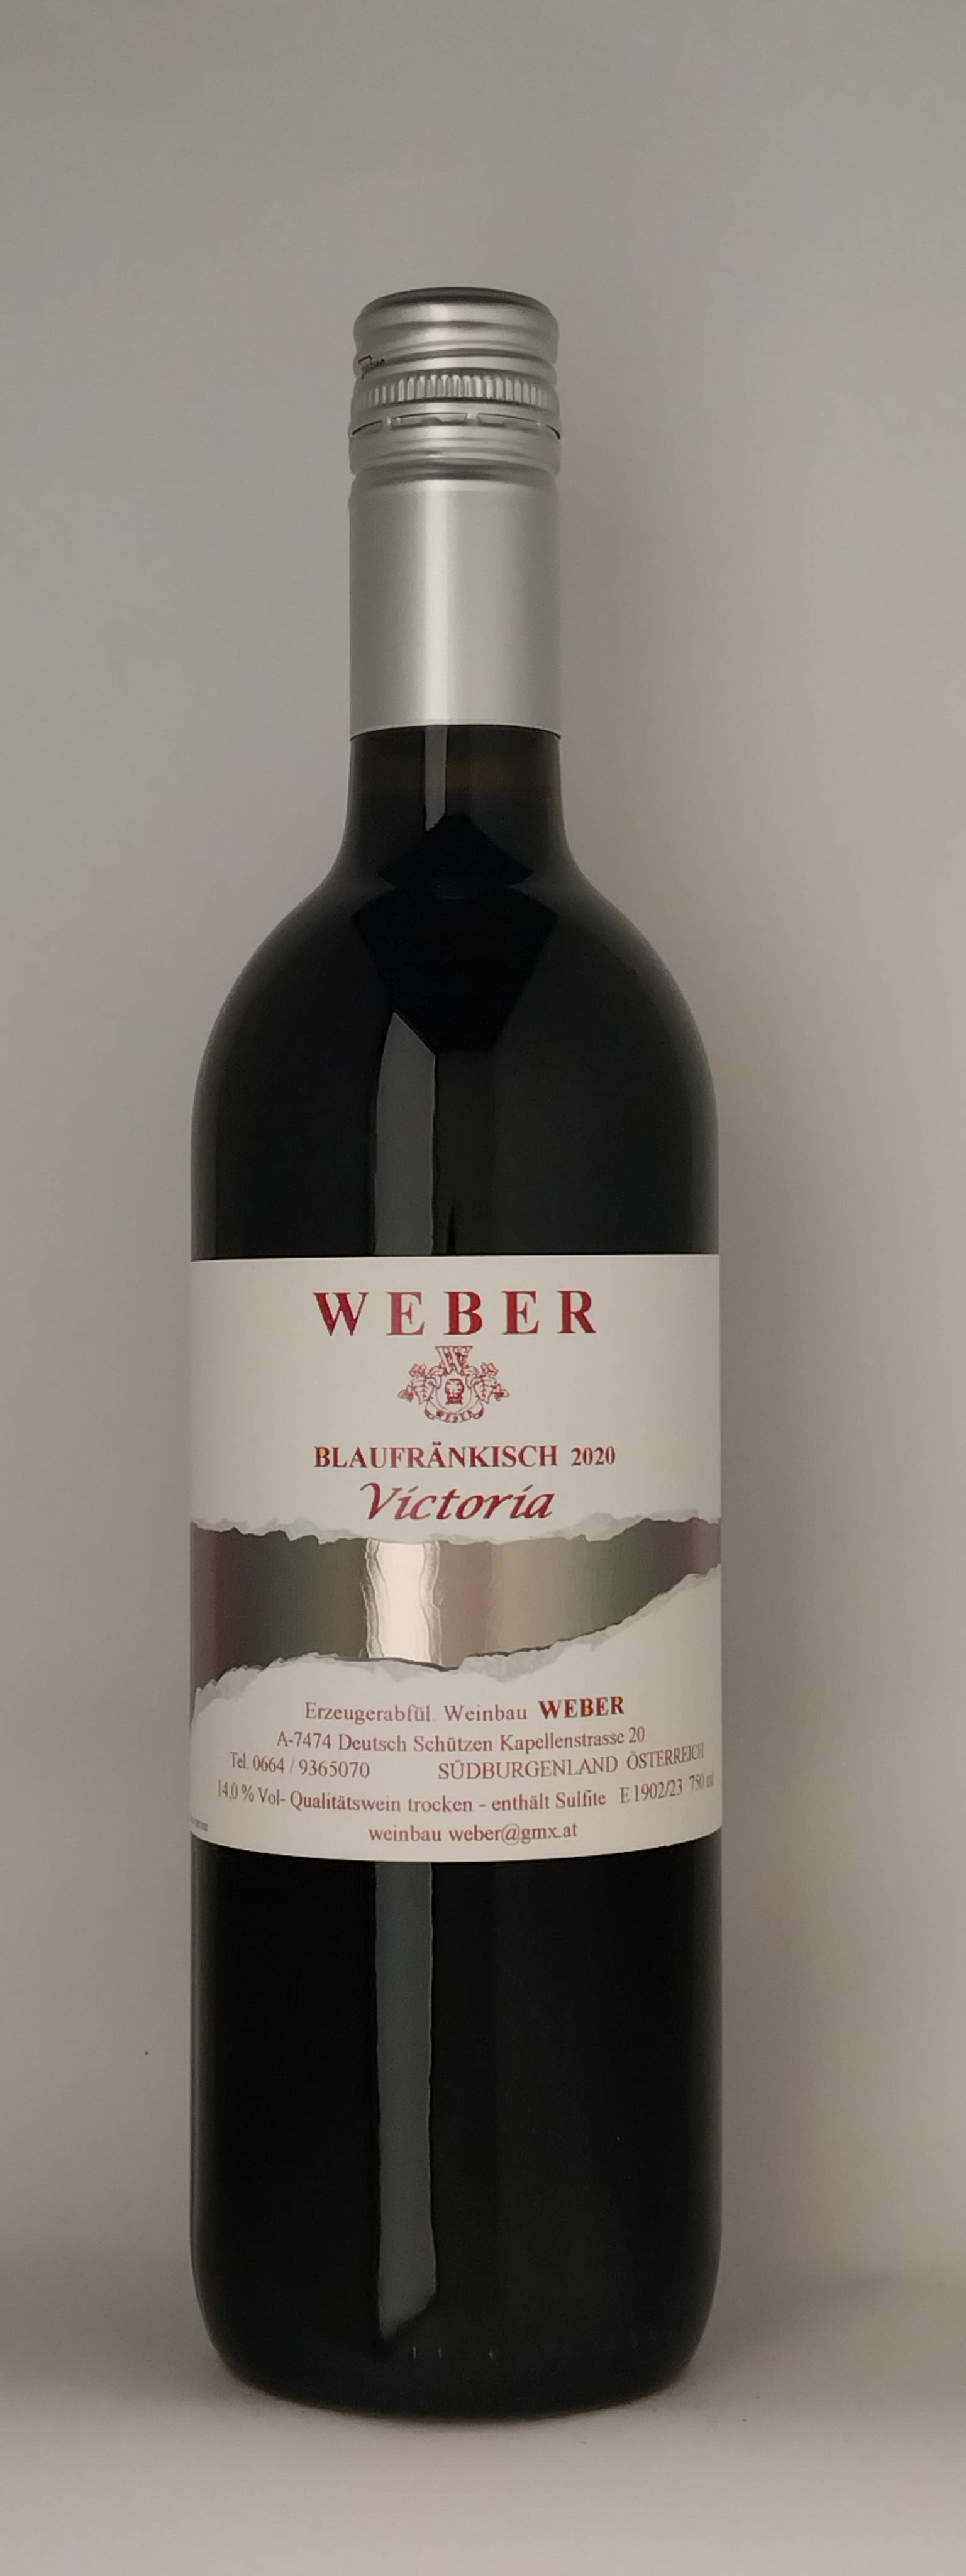 Vinothek Eisenberg Blaufränkisch Victoria 2020 Weber Eduard